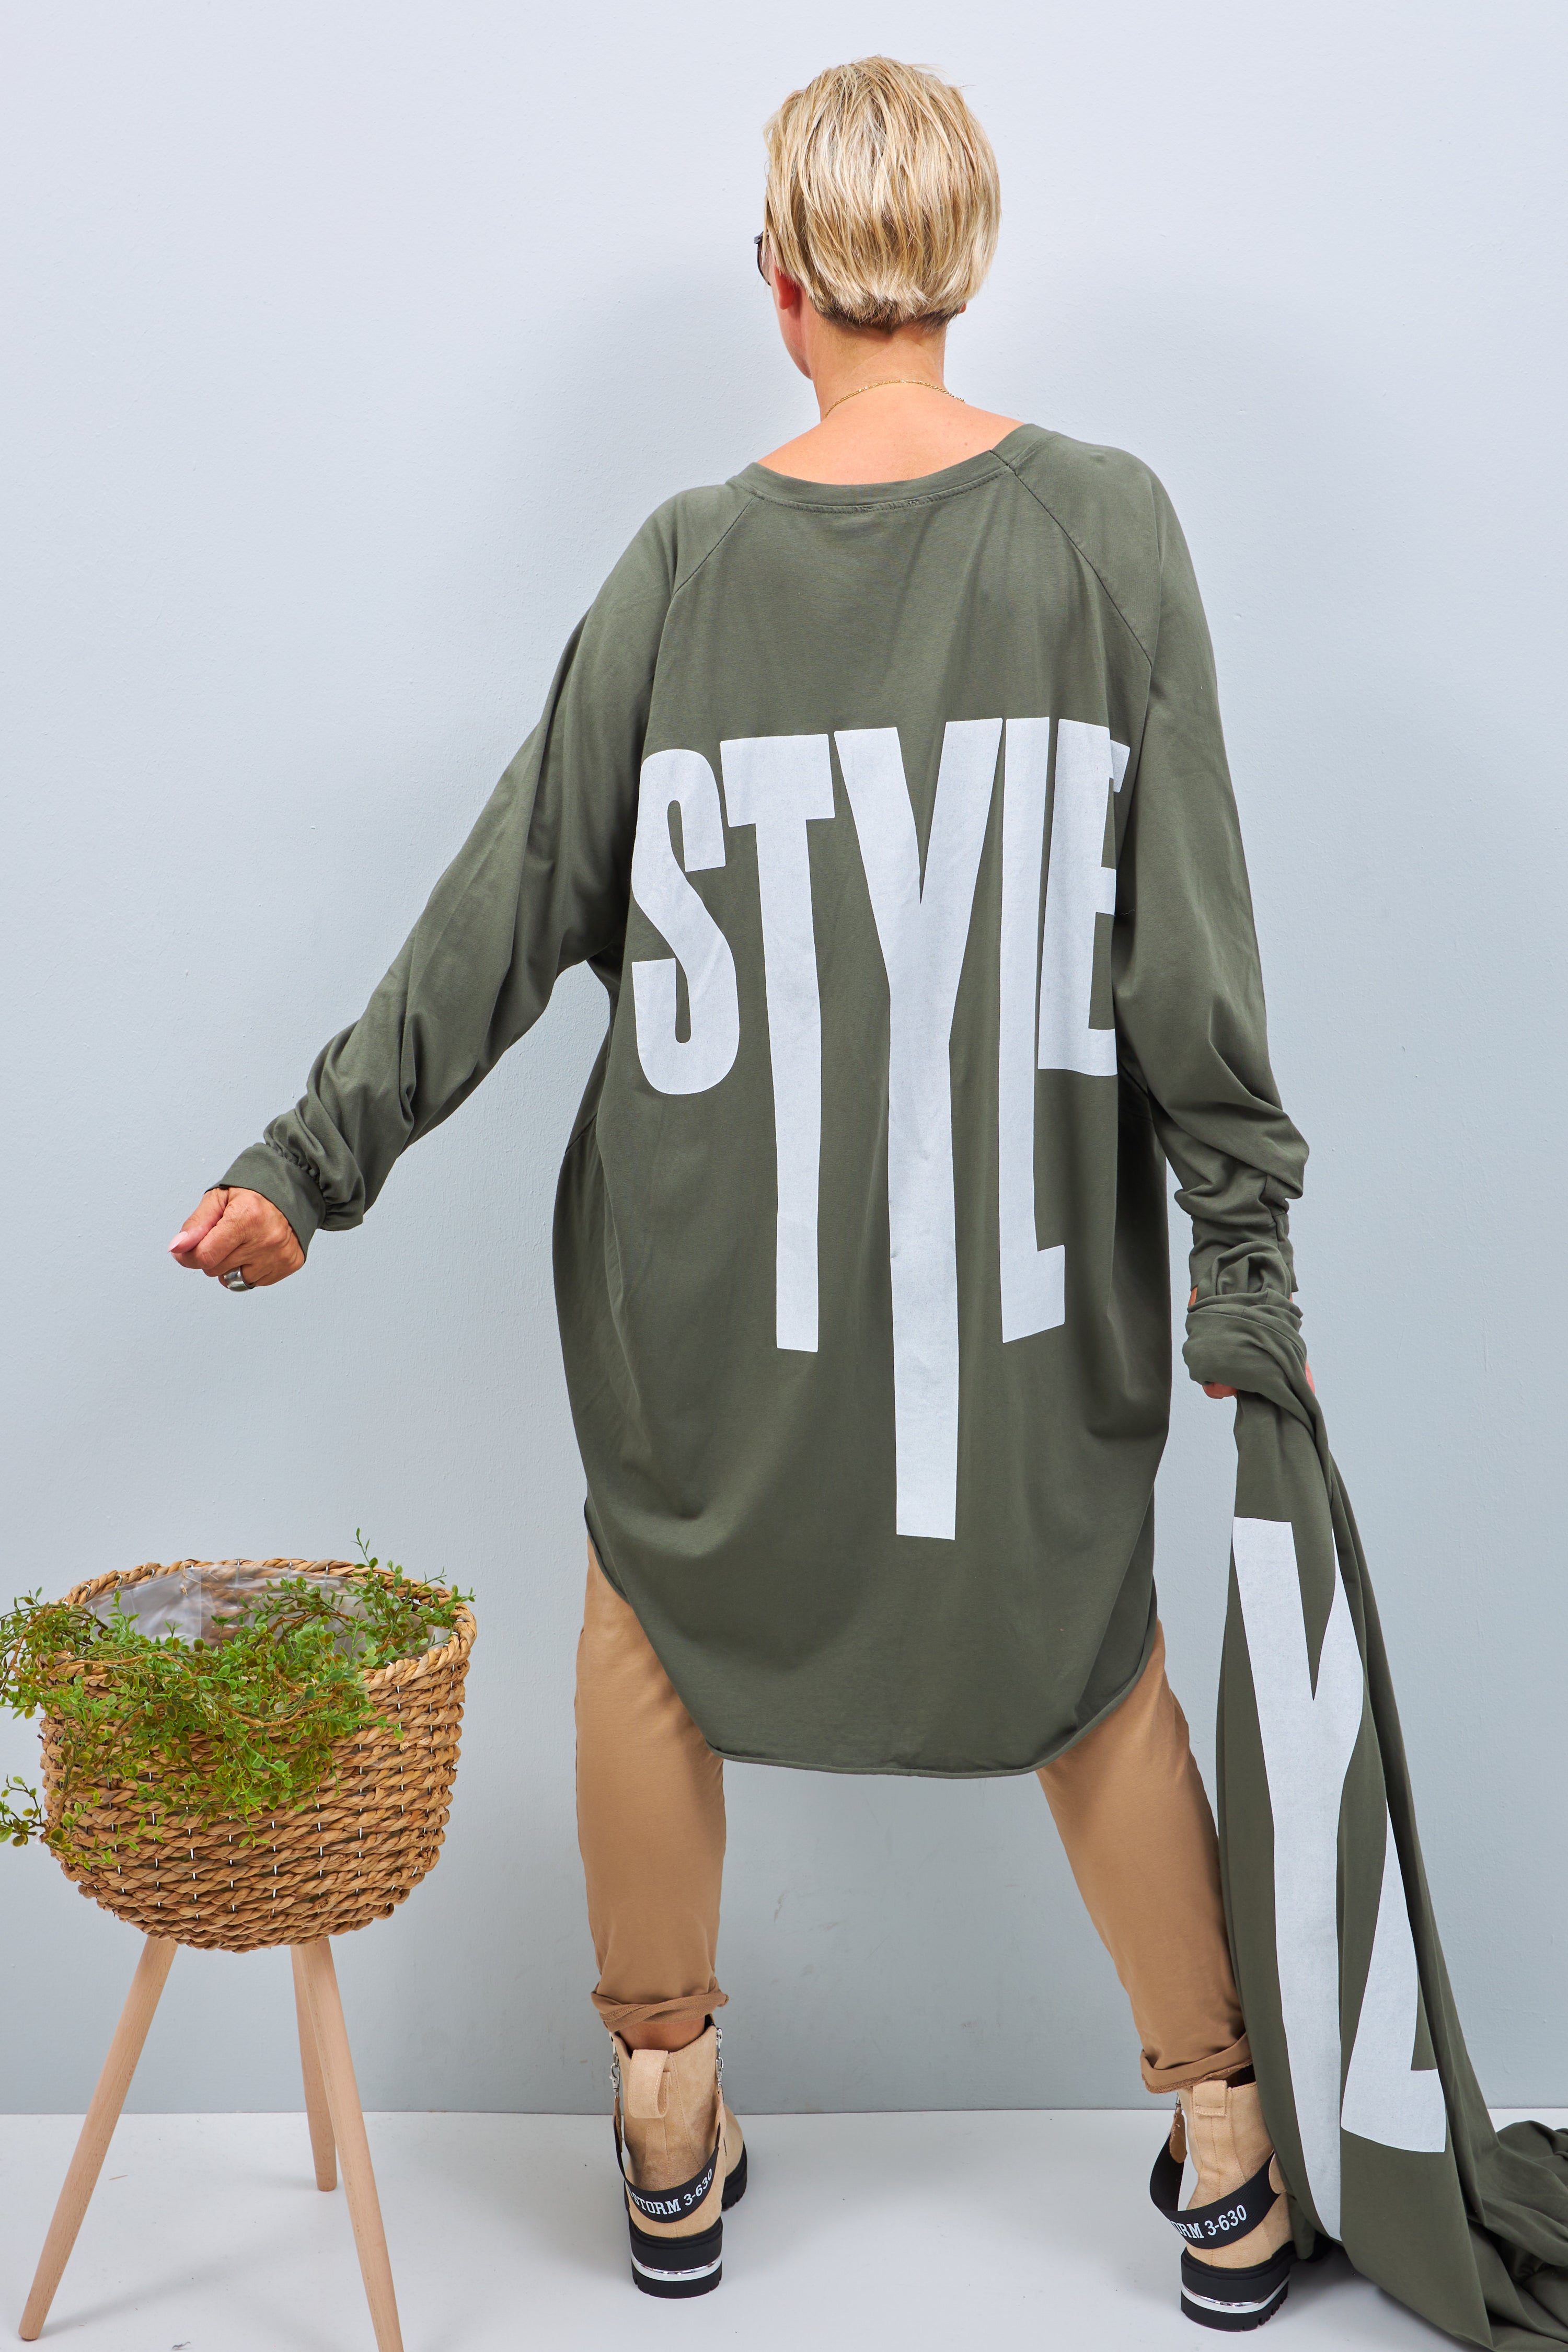 Oversized Longshirt mit Druck "Style", khaki